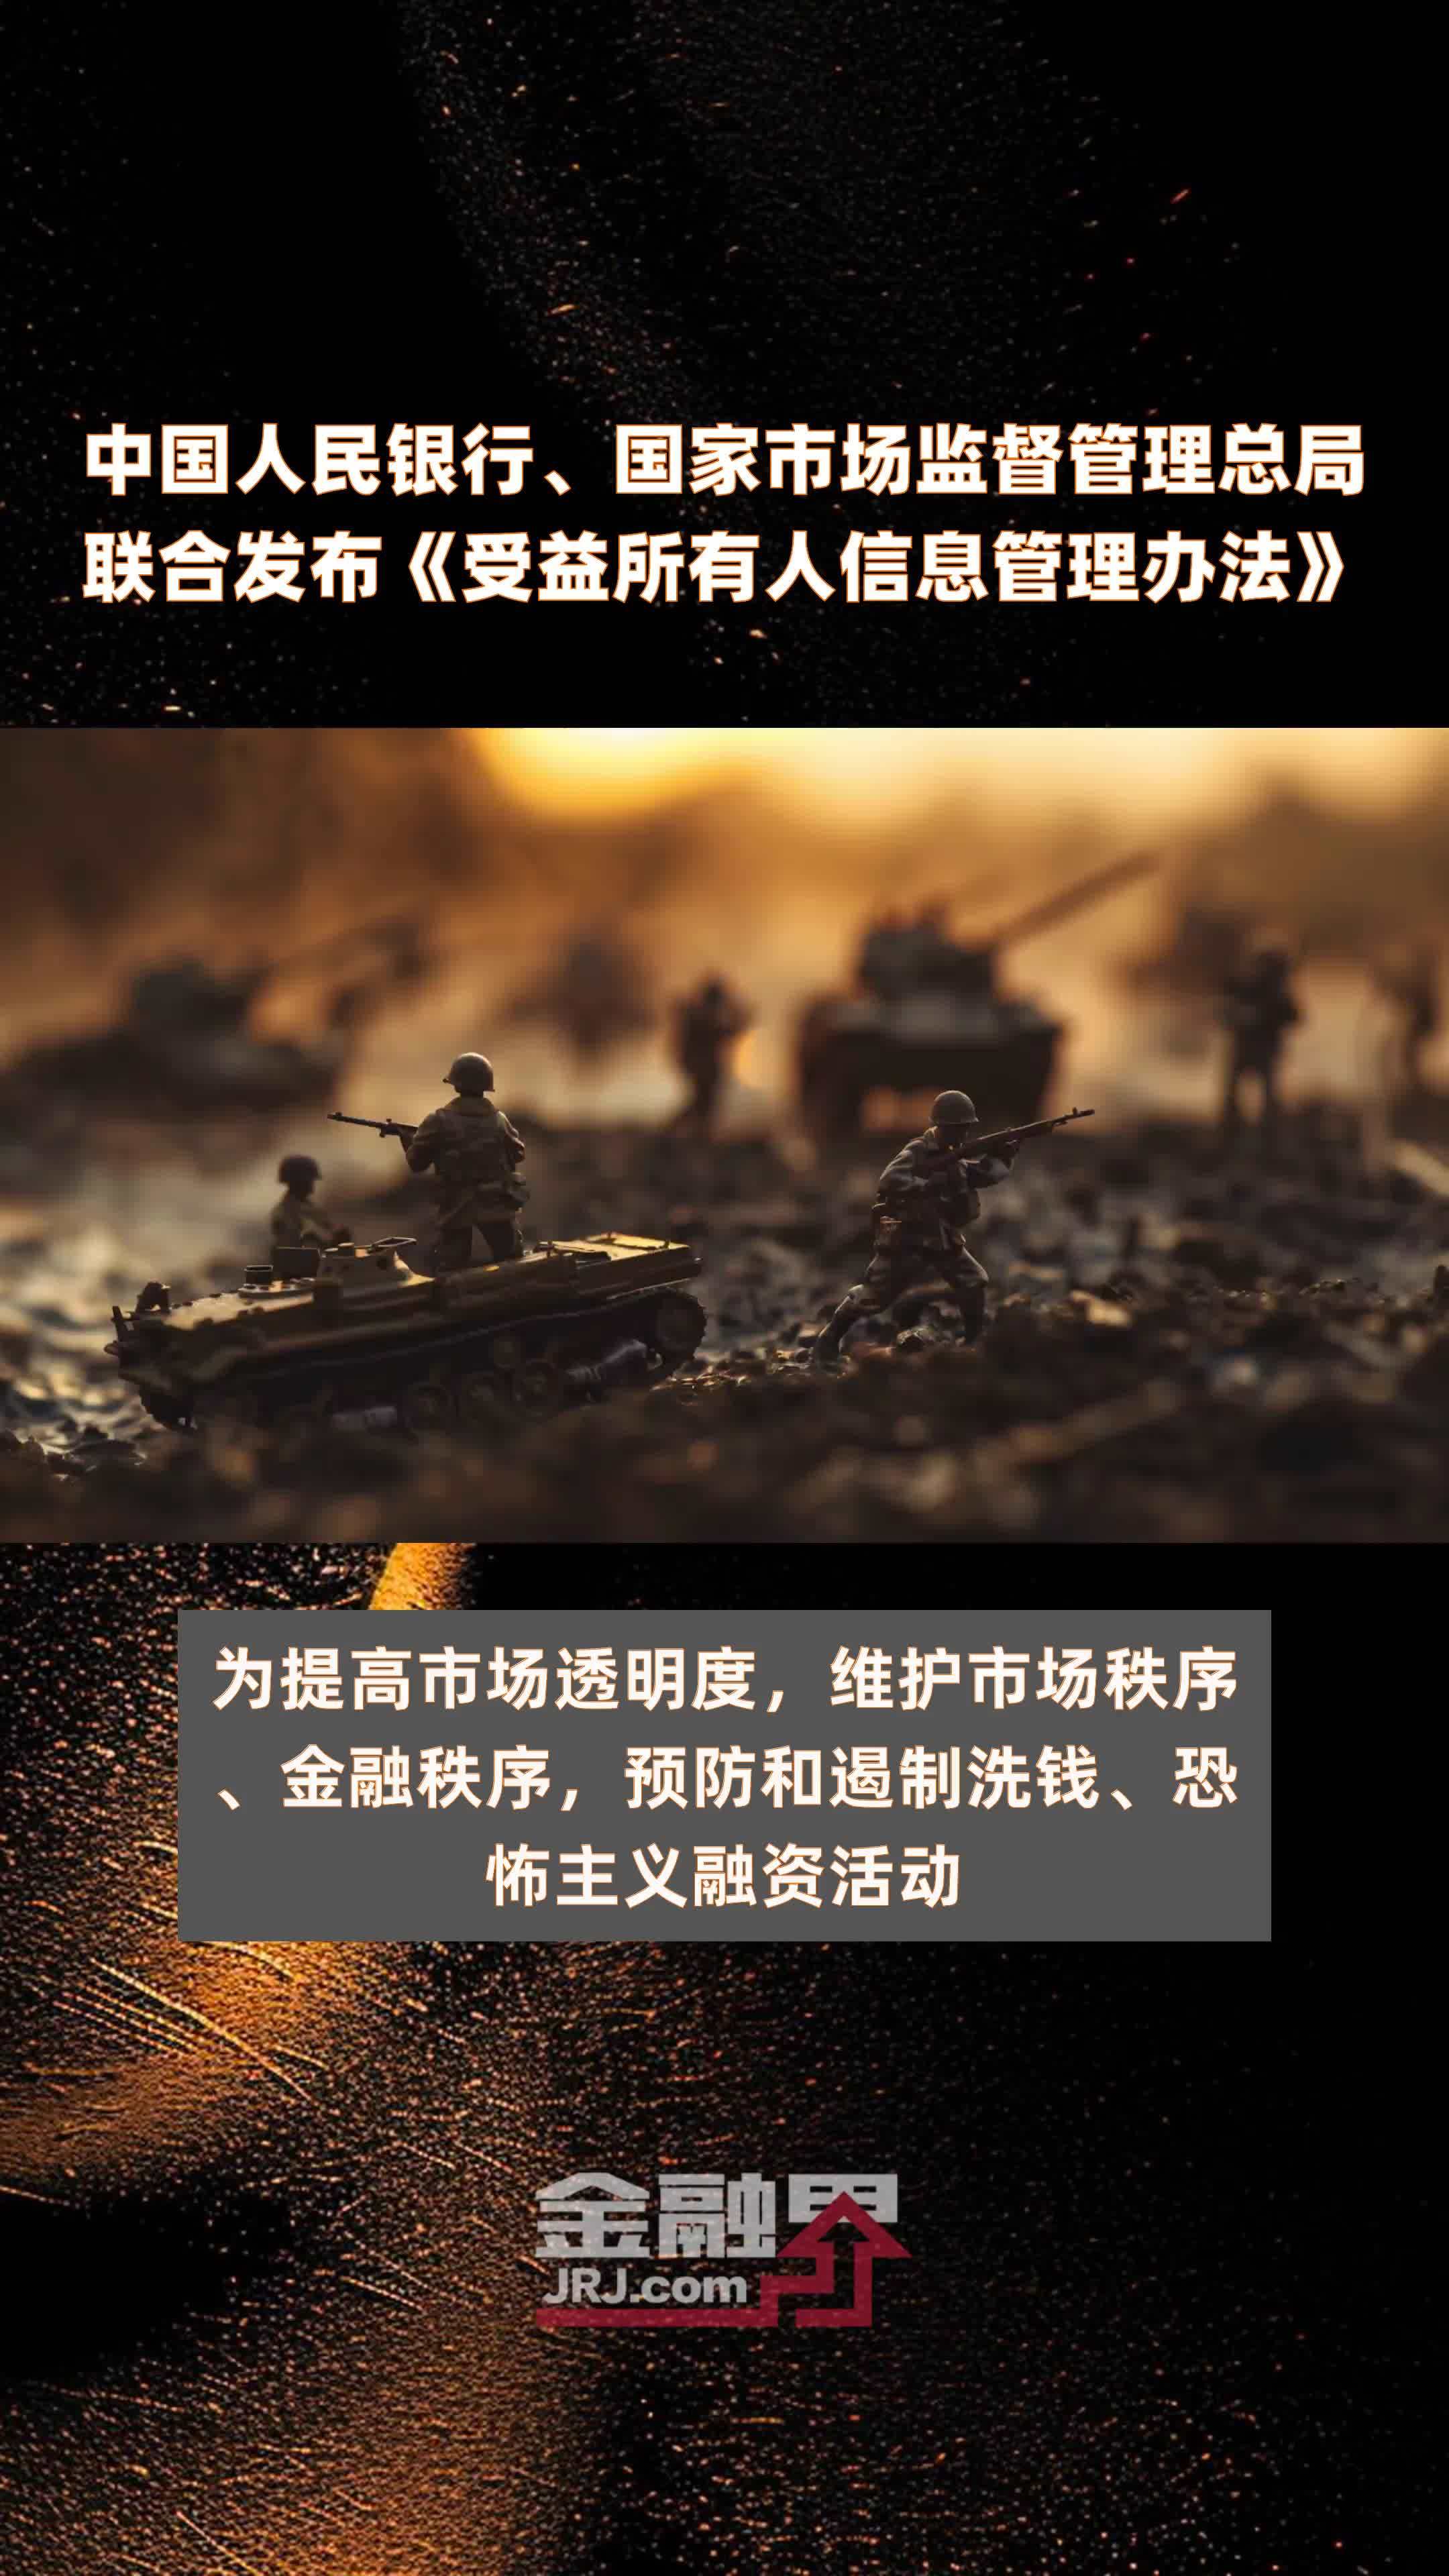 中国人民银行、国家市场监督管理总局联合发布《受益所有人信息管理办法》|快报